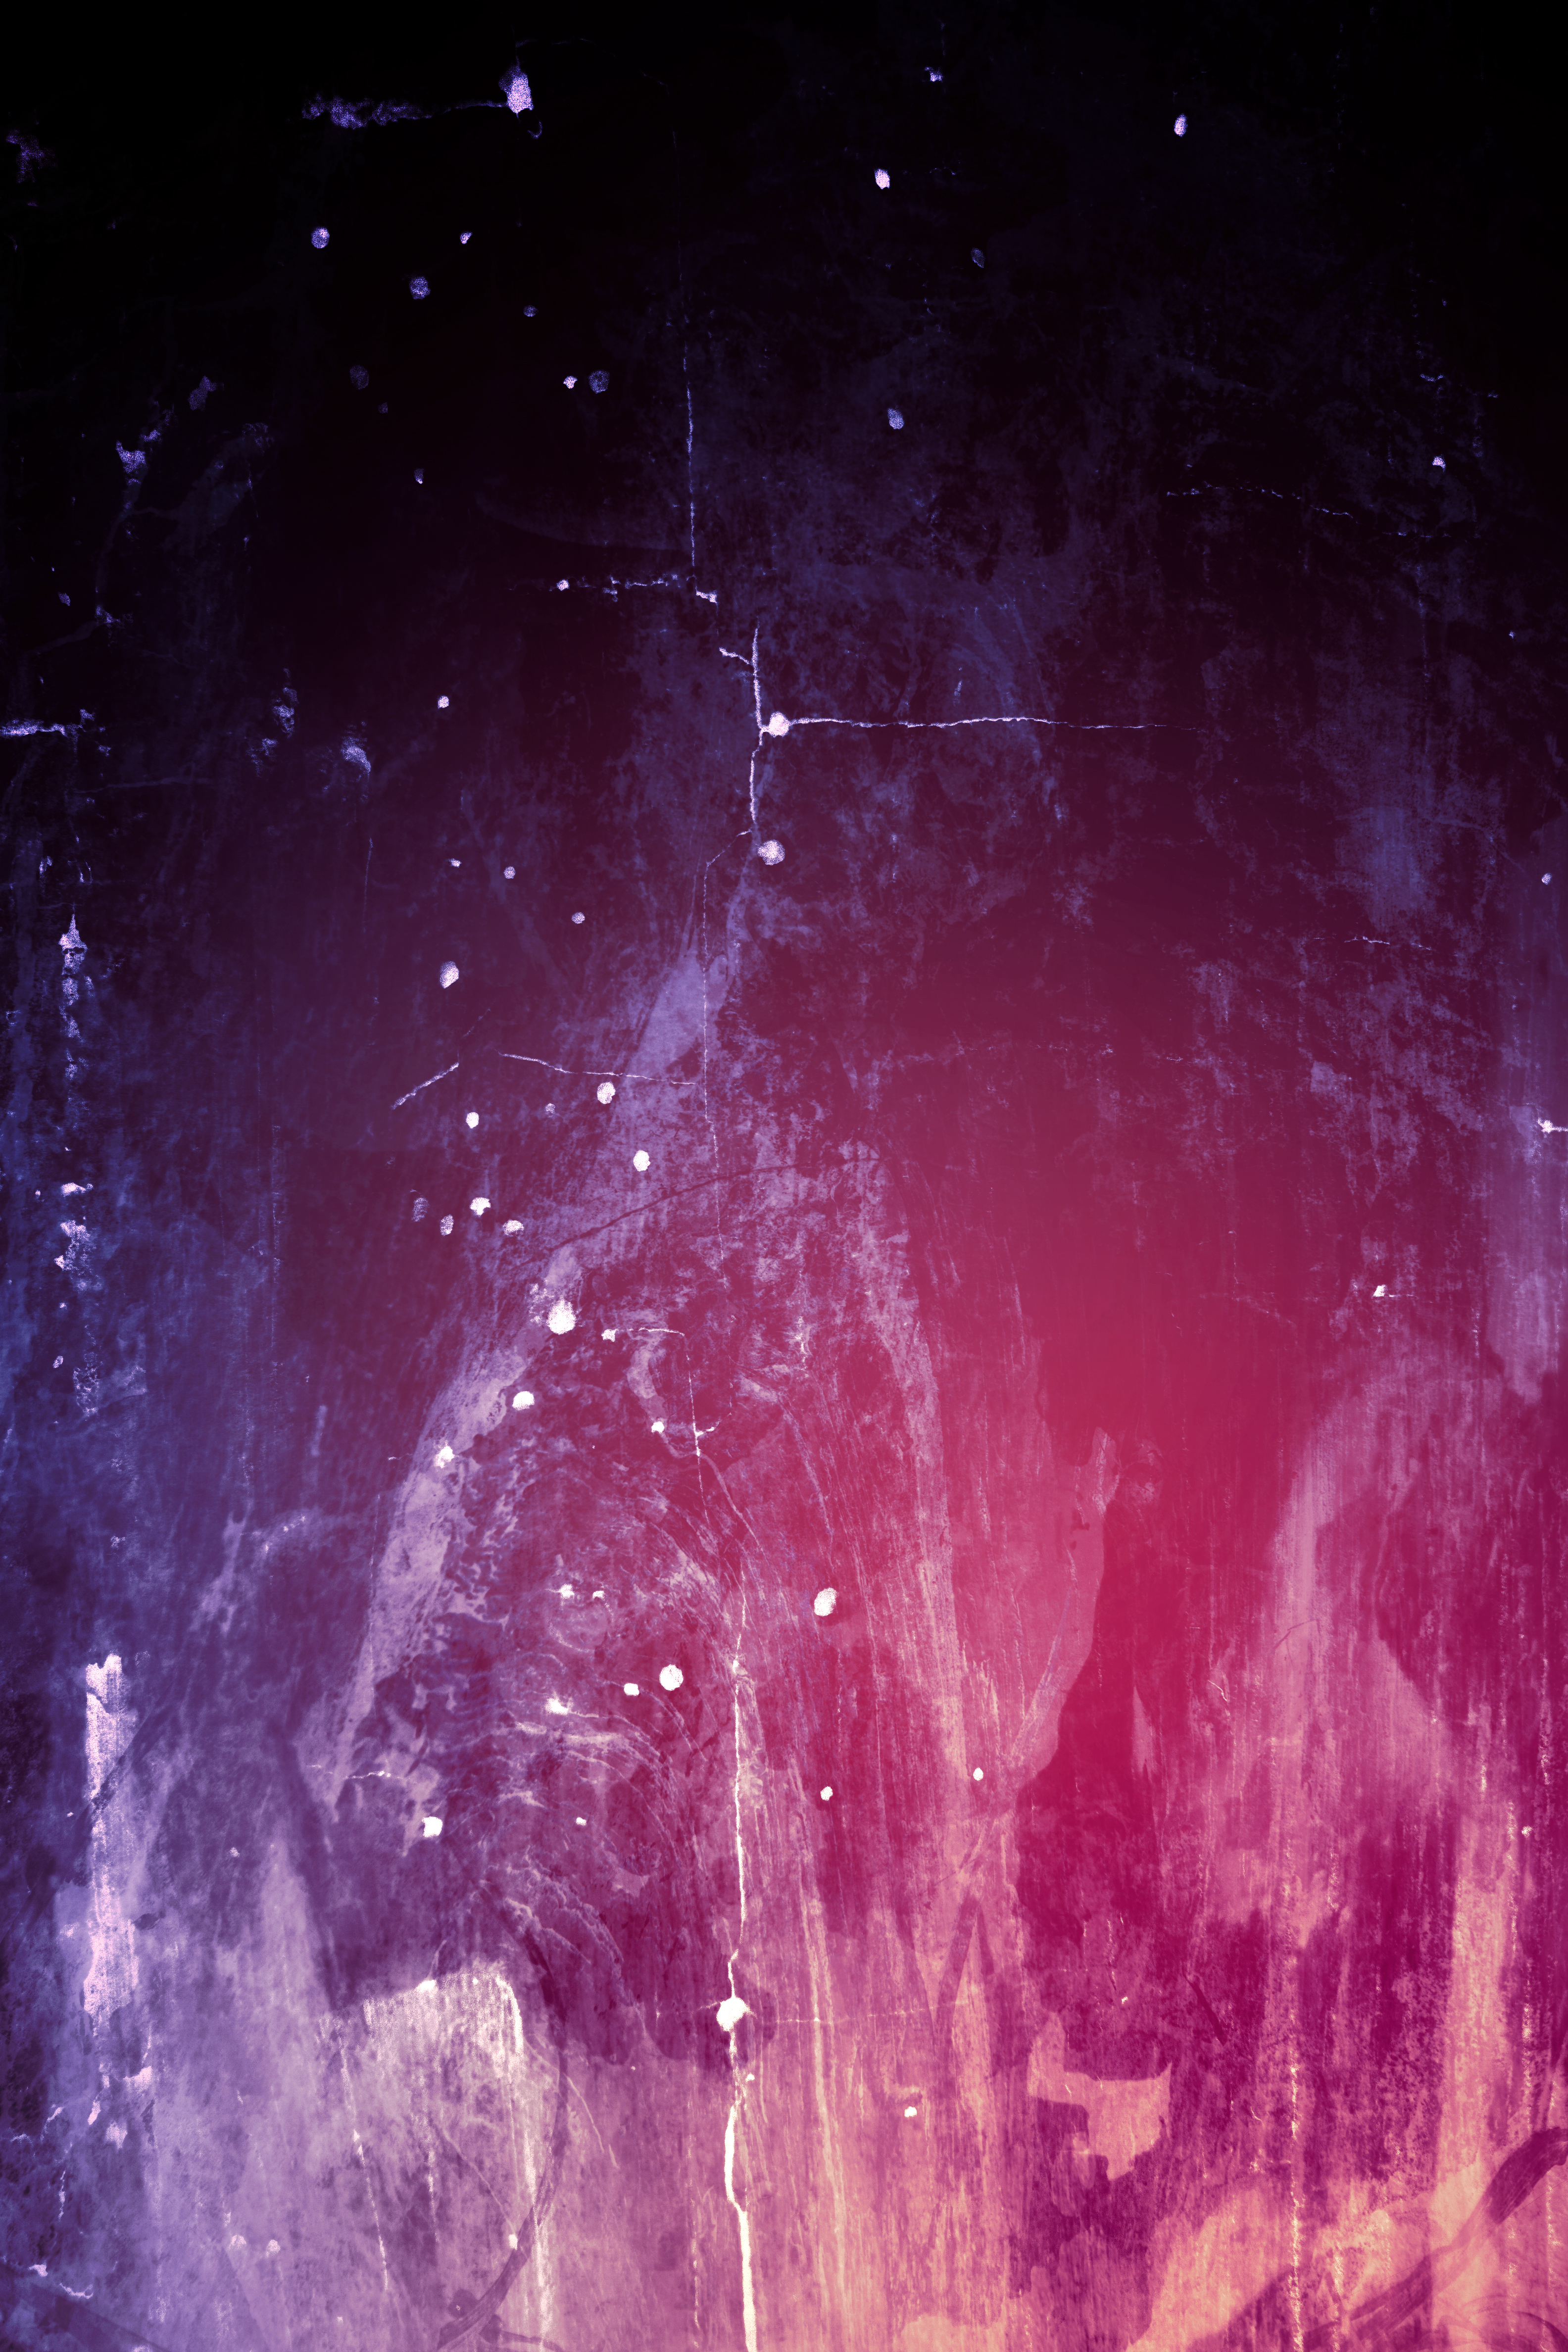 Desktop Backgrounds Purple texture, divorces, stains, violet